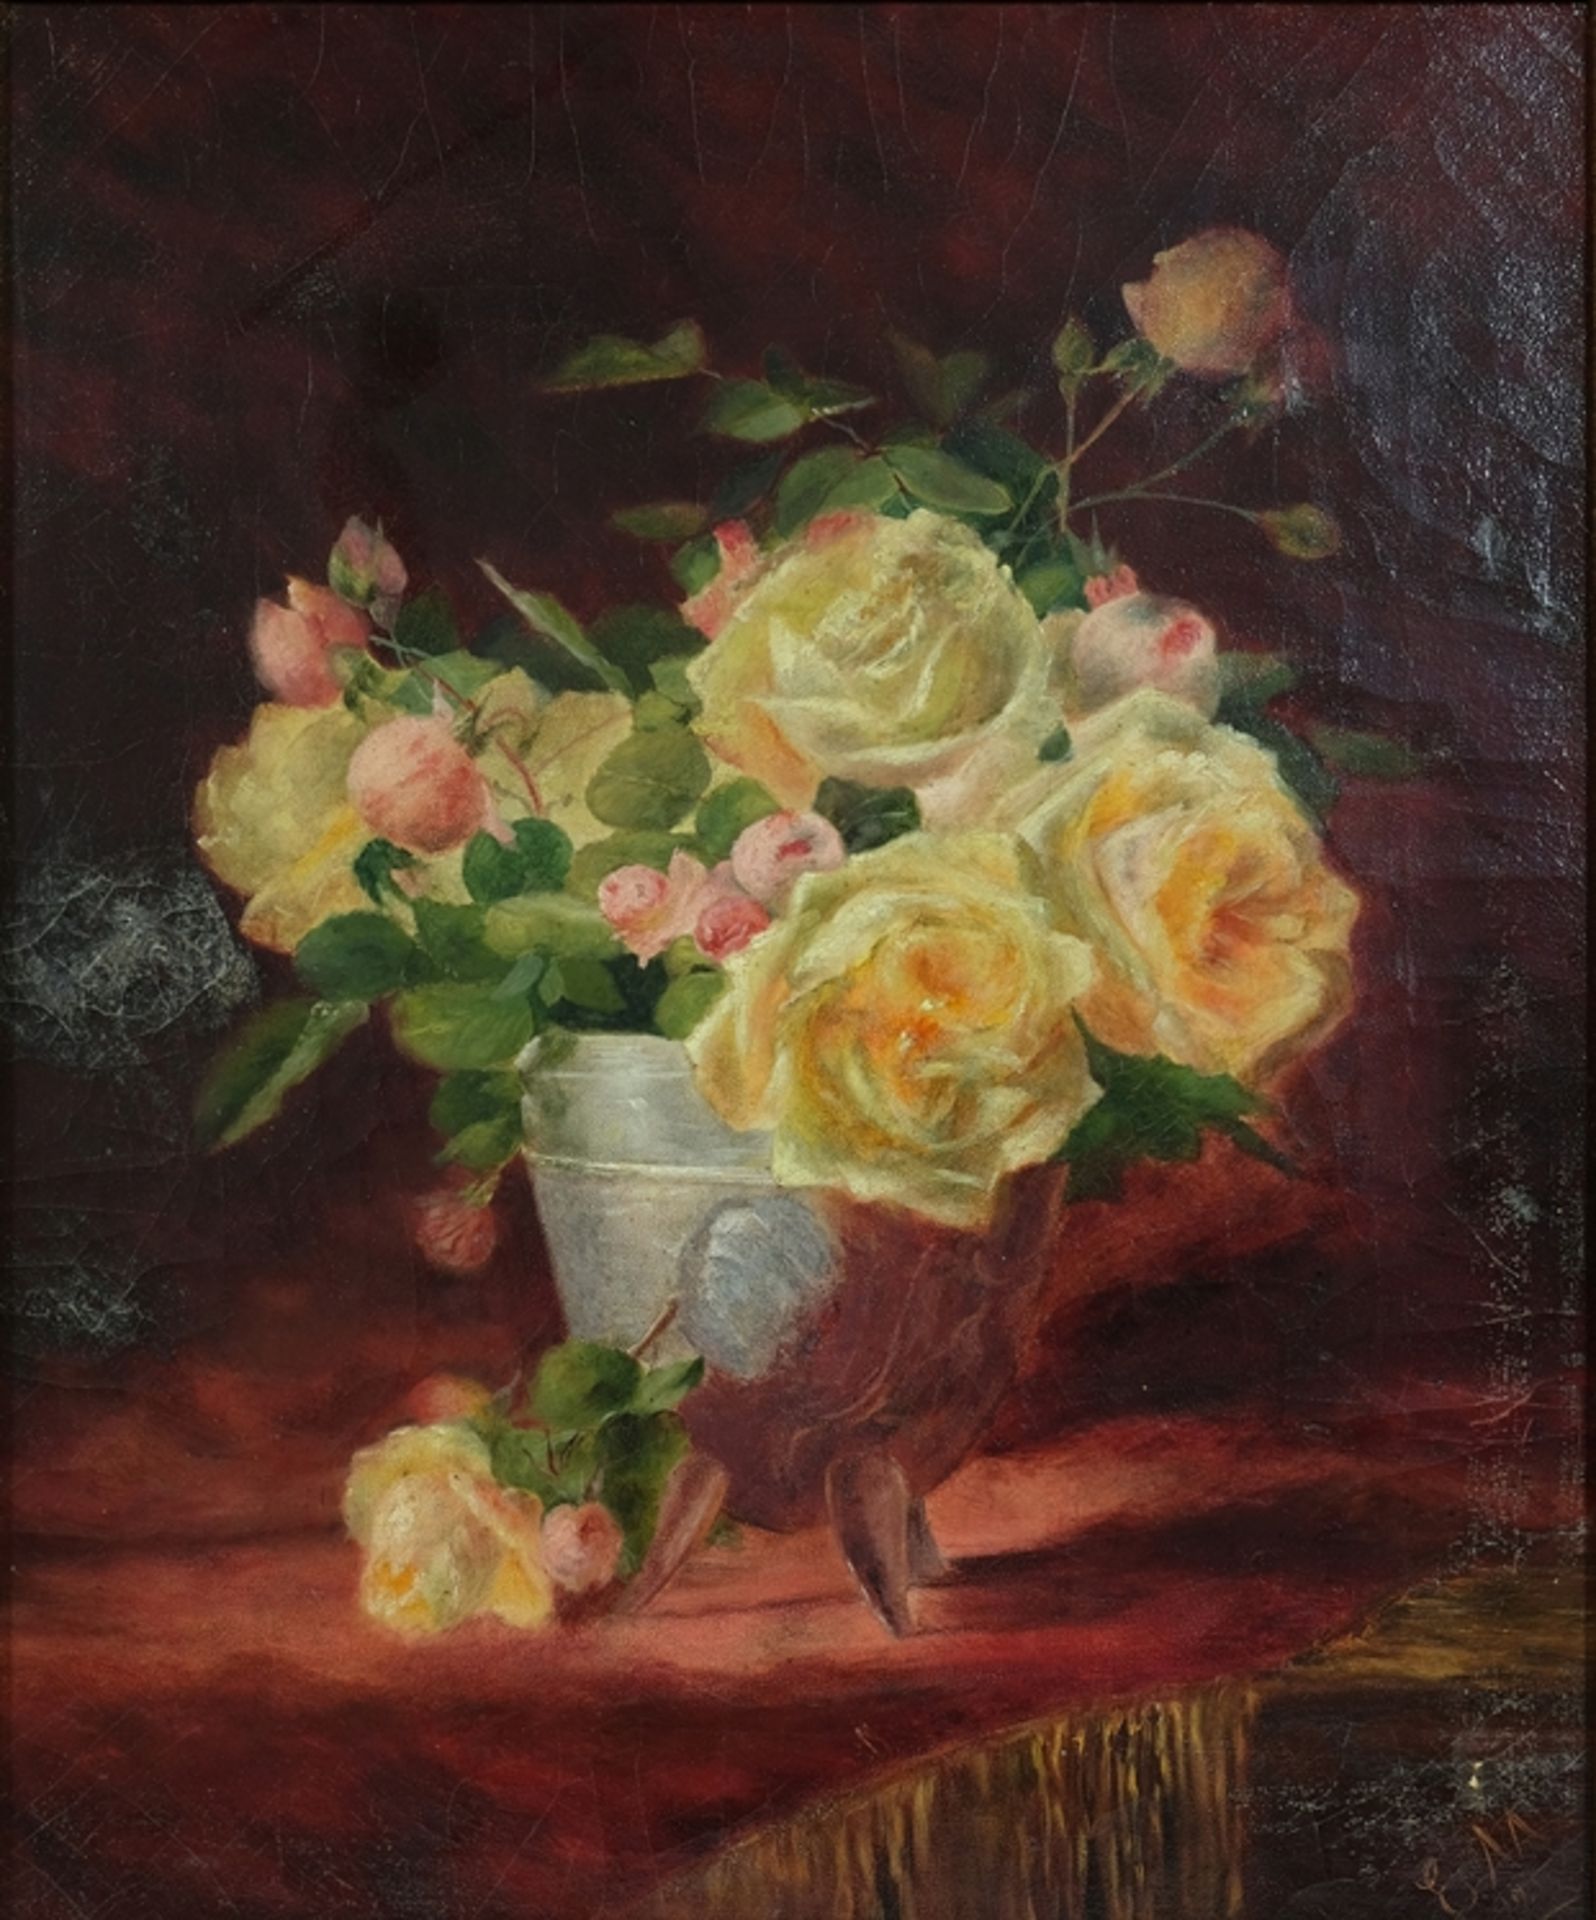 MEDIZ-PELIKAN Emilie zugeschrieben/attributed (1861-1908) "Rosen", Öl auf Leinwand. Stillleben. Unt